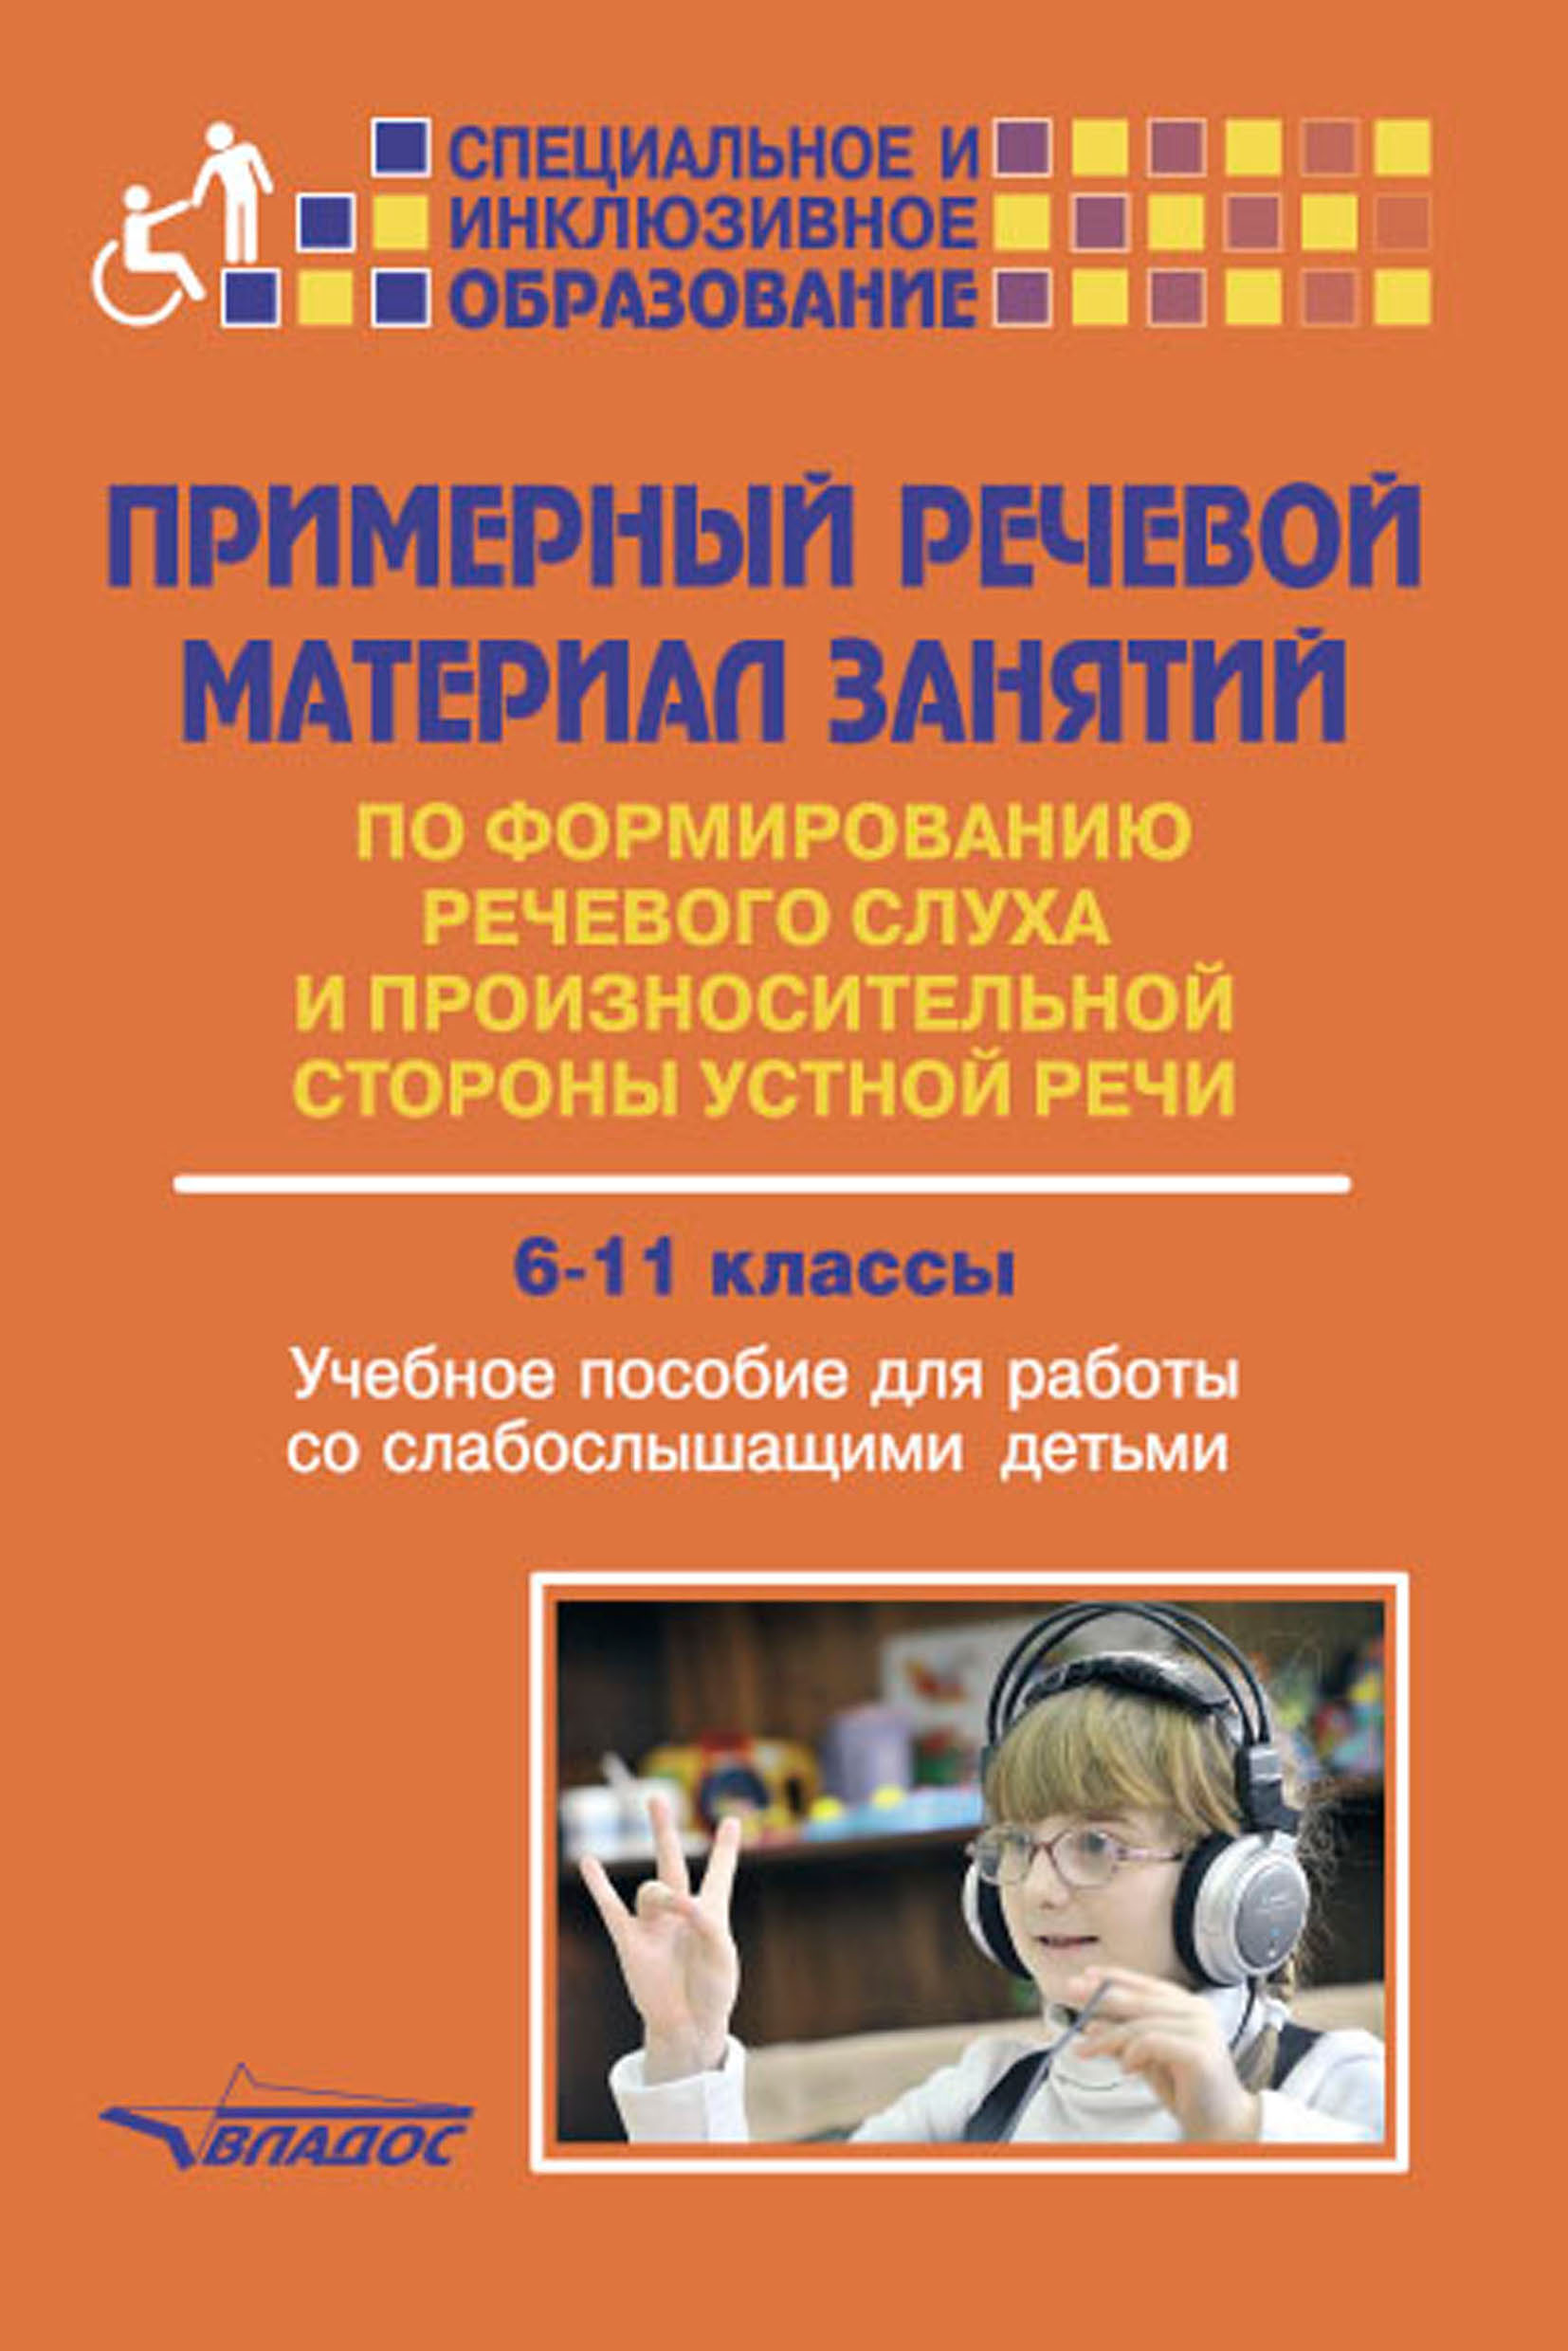 Слабослышащие методики. Учебное пособие для слабослышащих детей. Книги по формированию речевого слуха. Примерный речевой материал занятий по формированию. Пособия для детей с нарушением слуха.